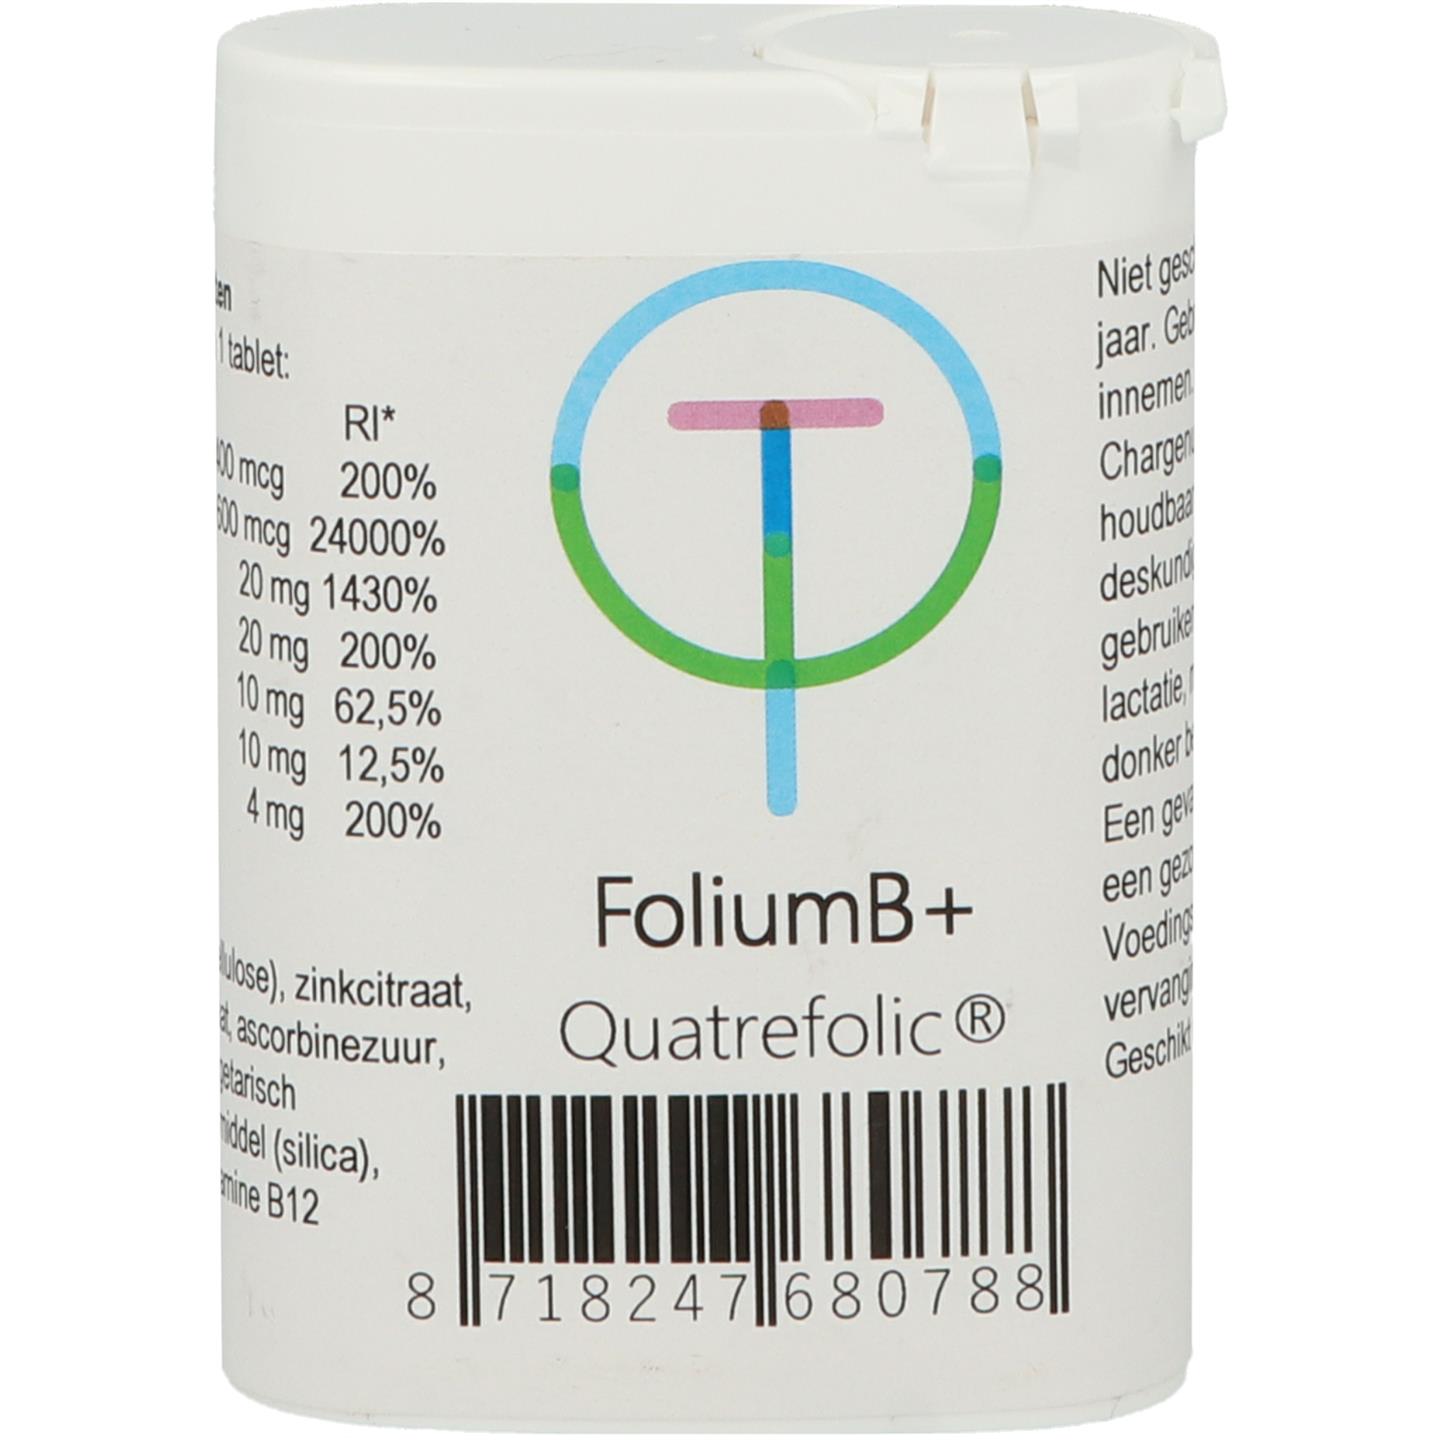 FoliumB+